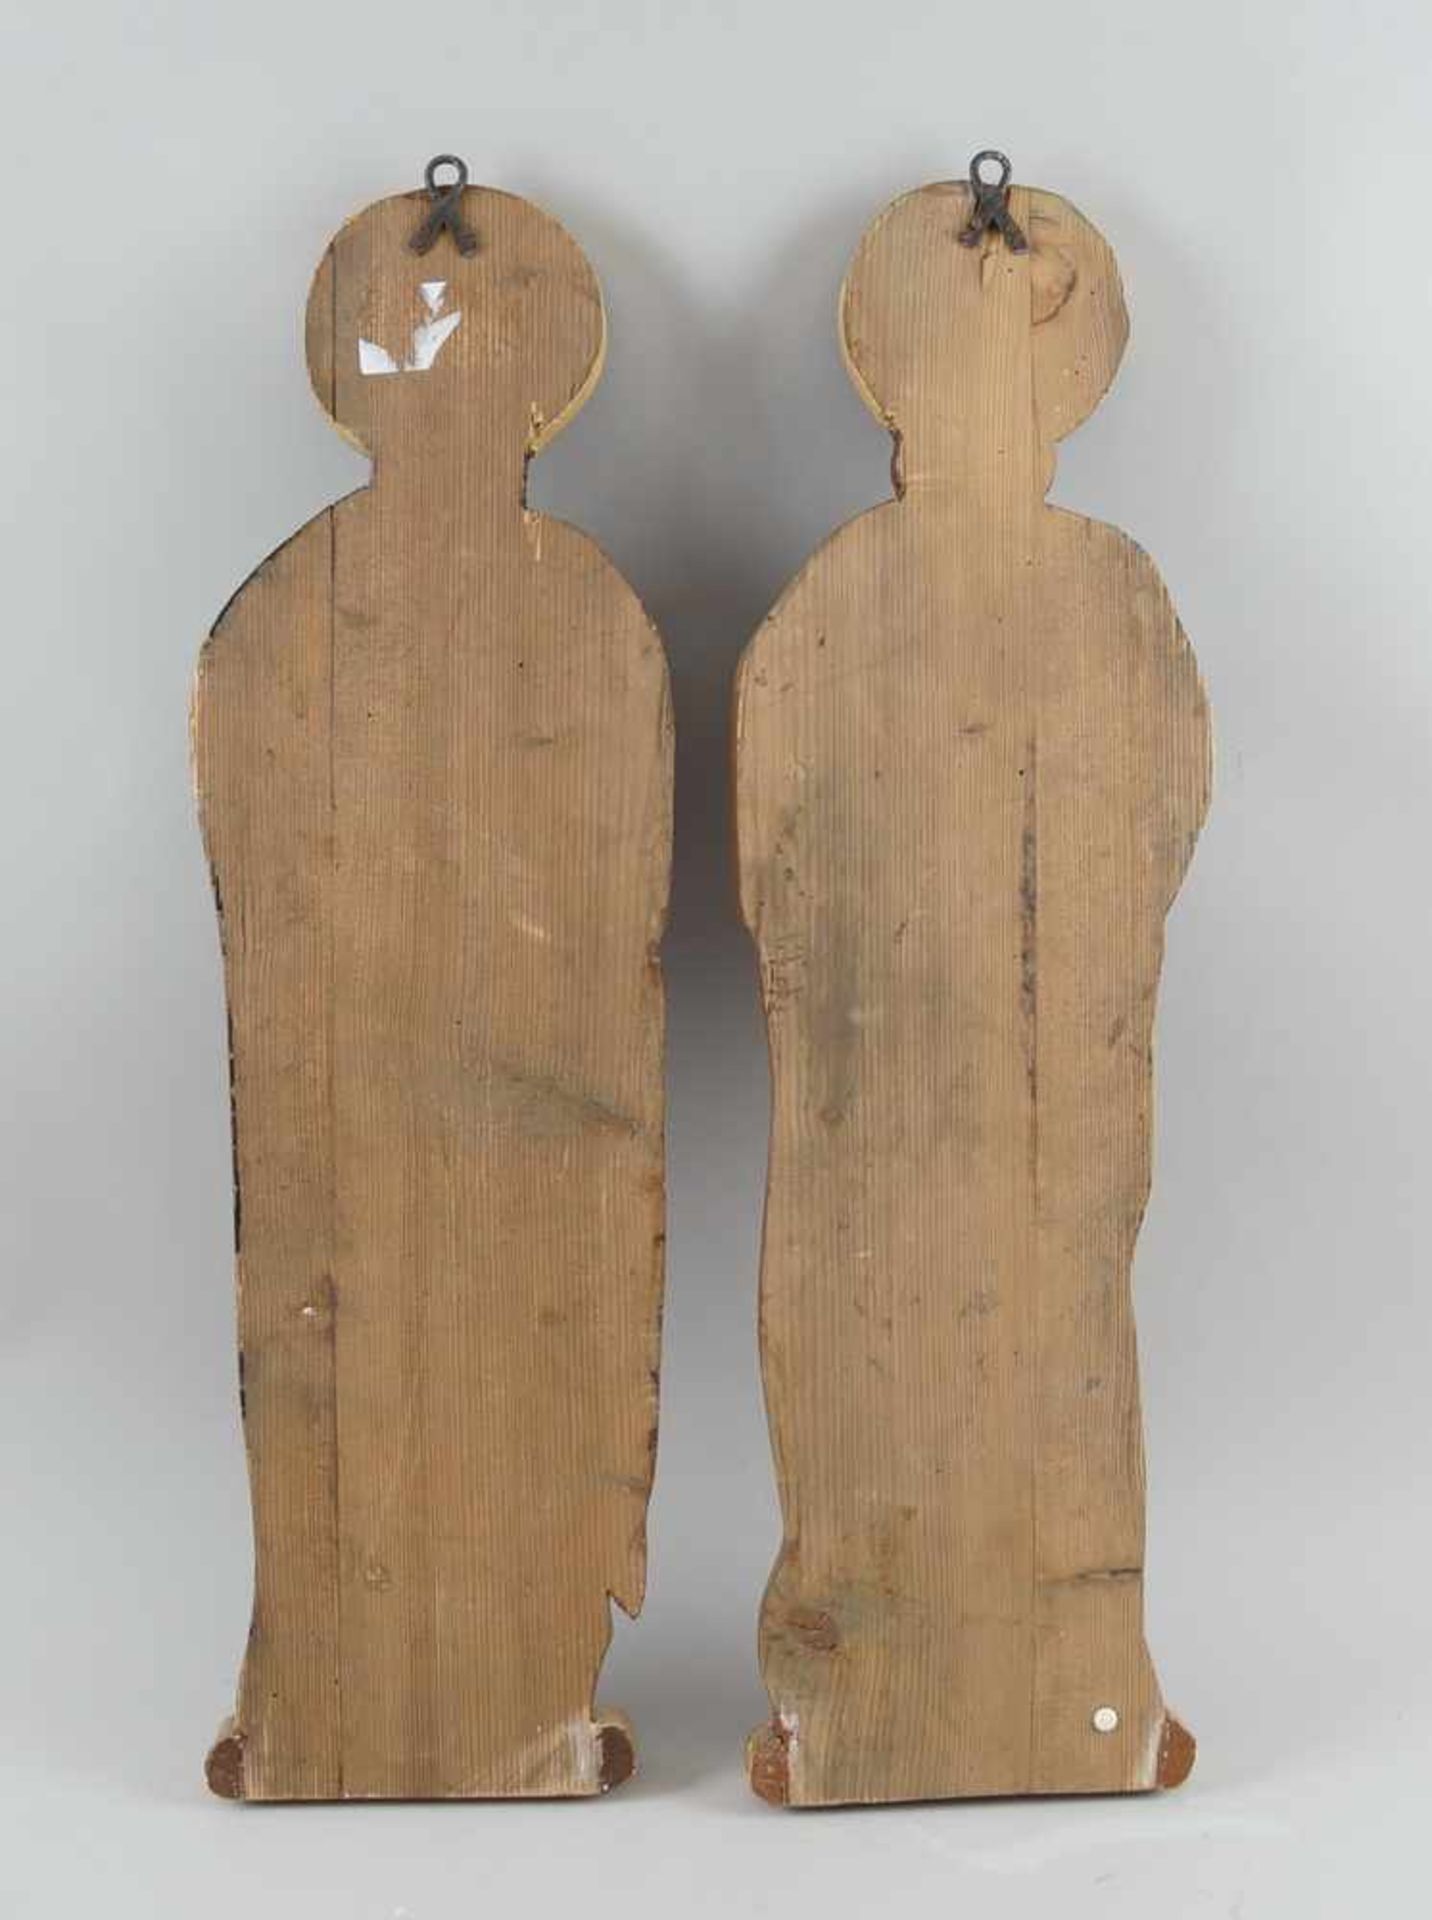 Peter und Paul, heiliger Petrus und Paulus, bemalte Holztafeln, 19. JH, geschnitzt, H 68cm- - -24.00 - Bild 7 aus 7